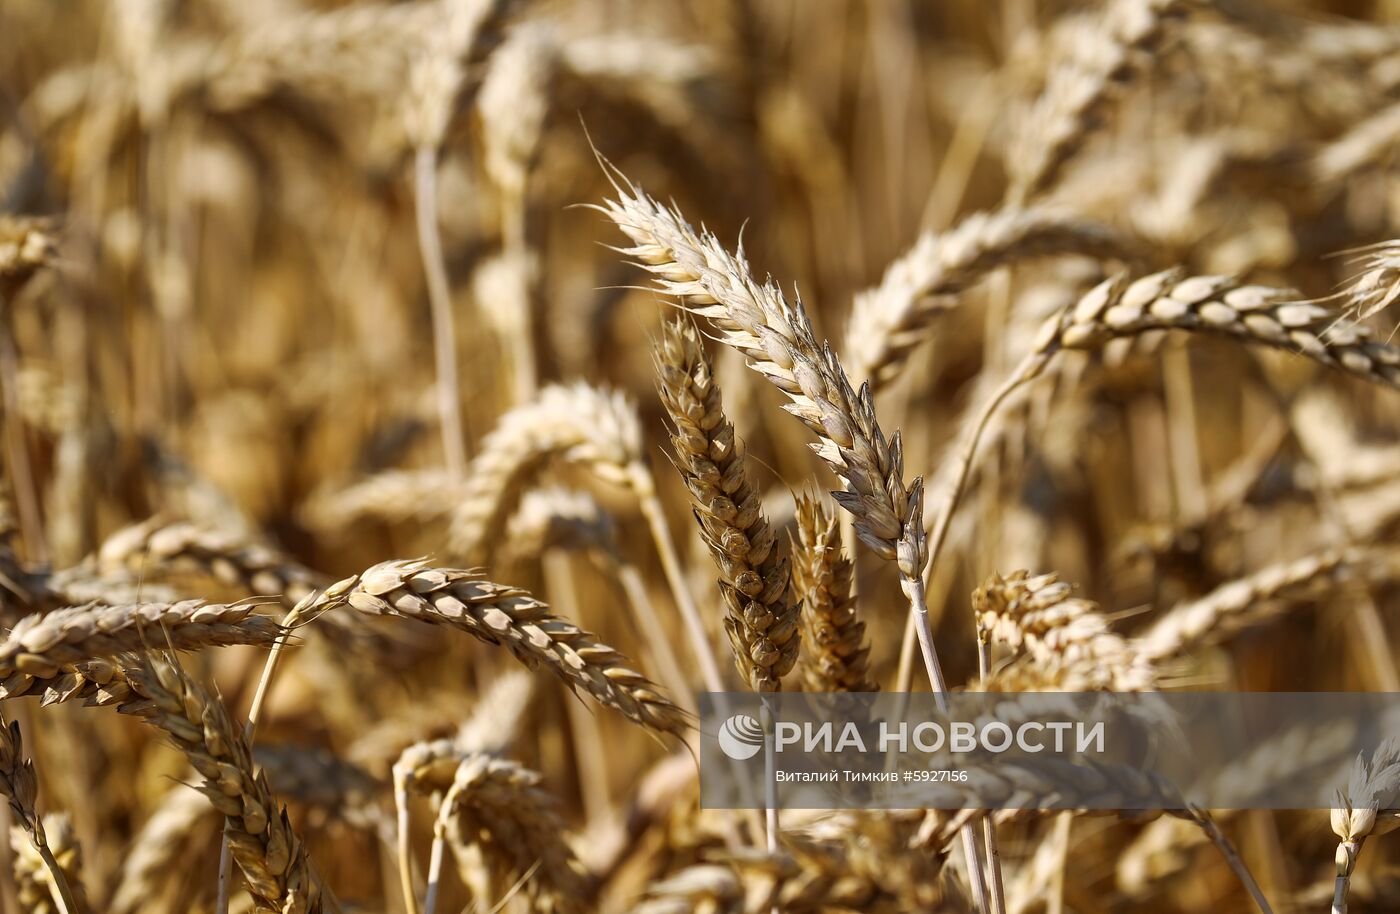 Уборка пшеницы в Краснодарском крае